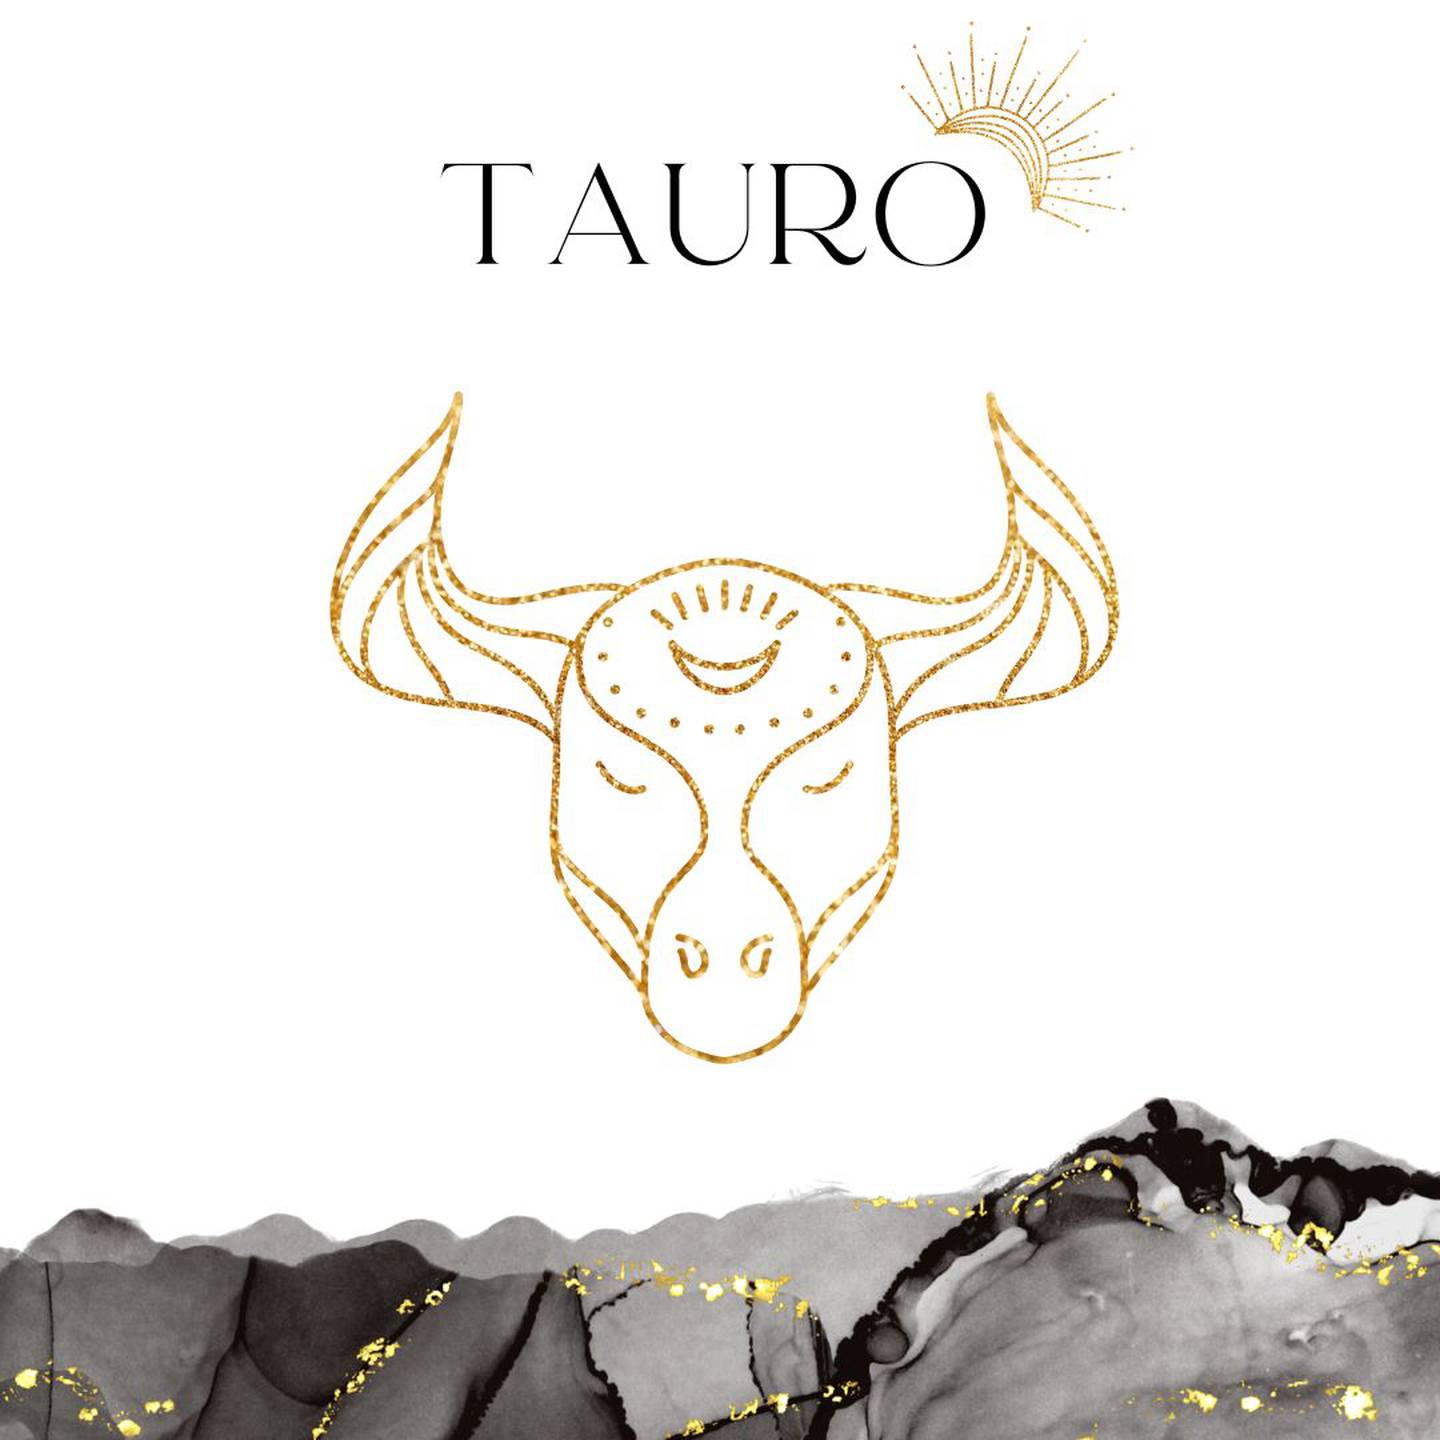 Palabra 'TAURO' en letras grandes y negras en el centro. Debajo, símbolo del signo de Tauro: un toro dorado.